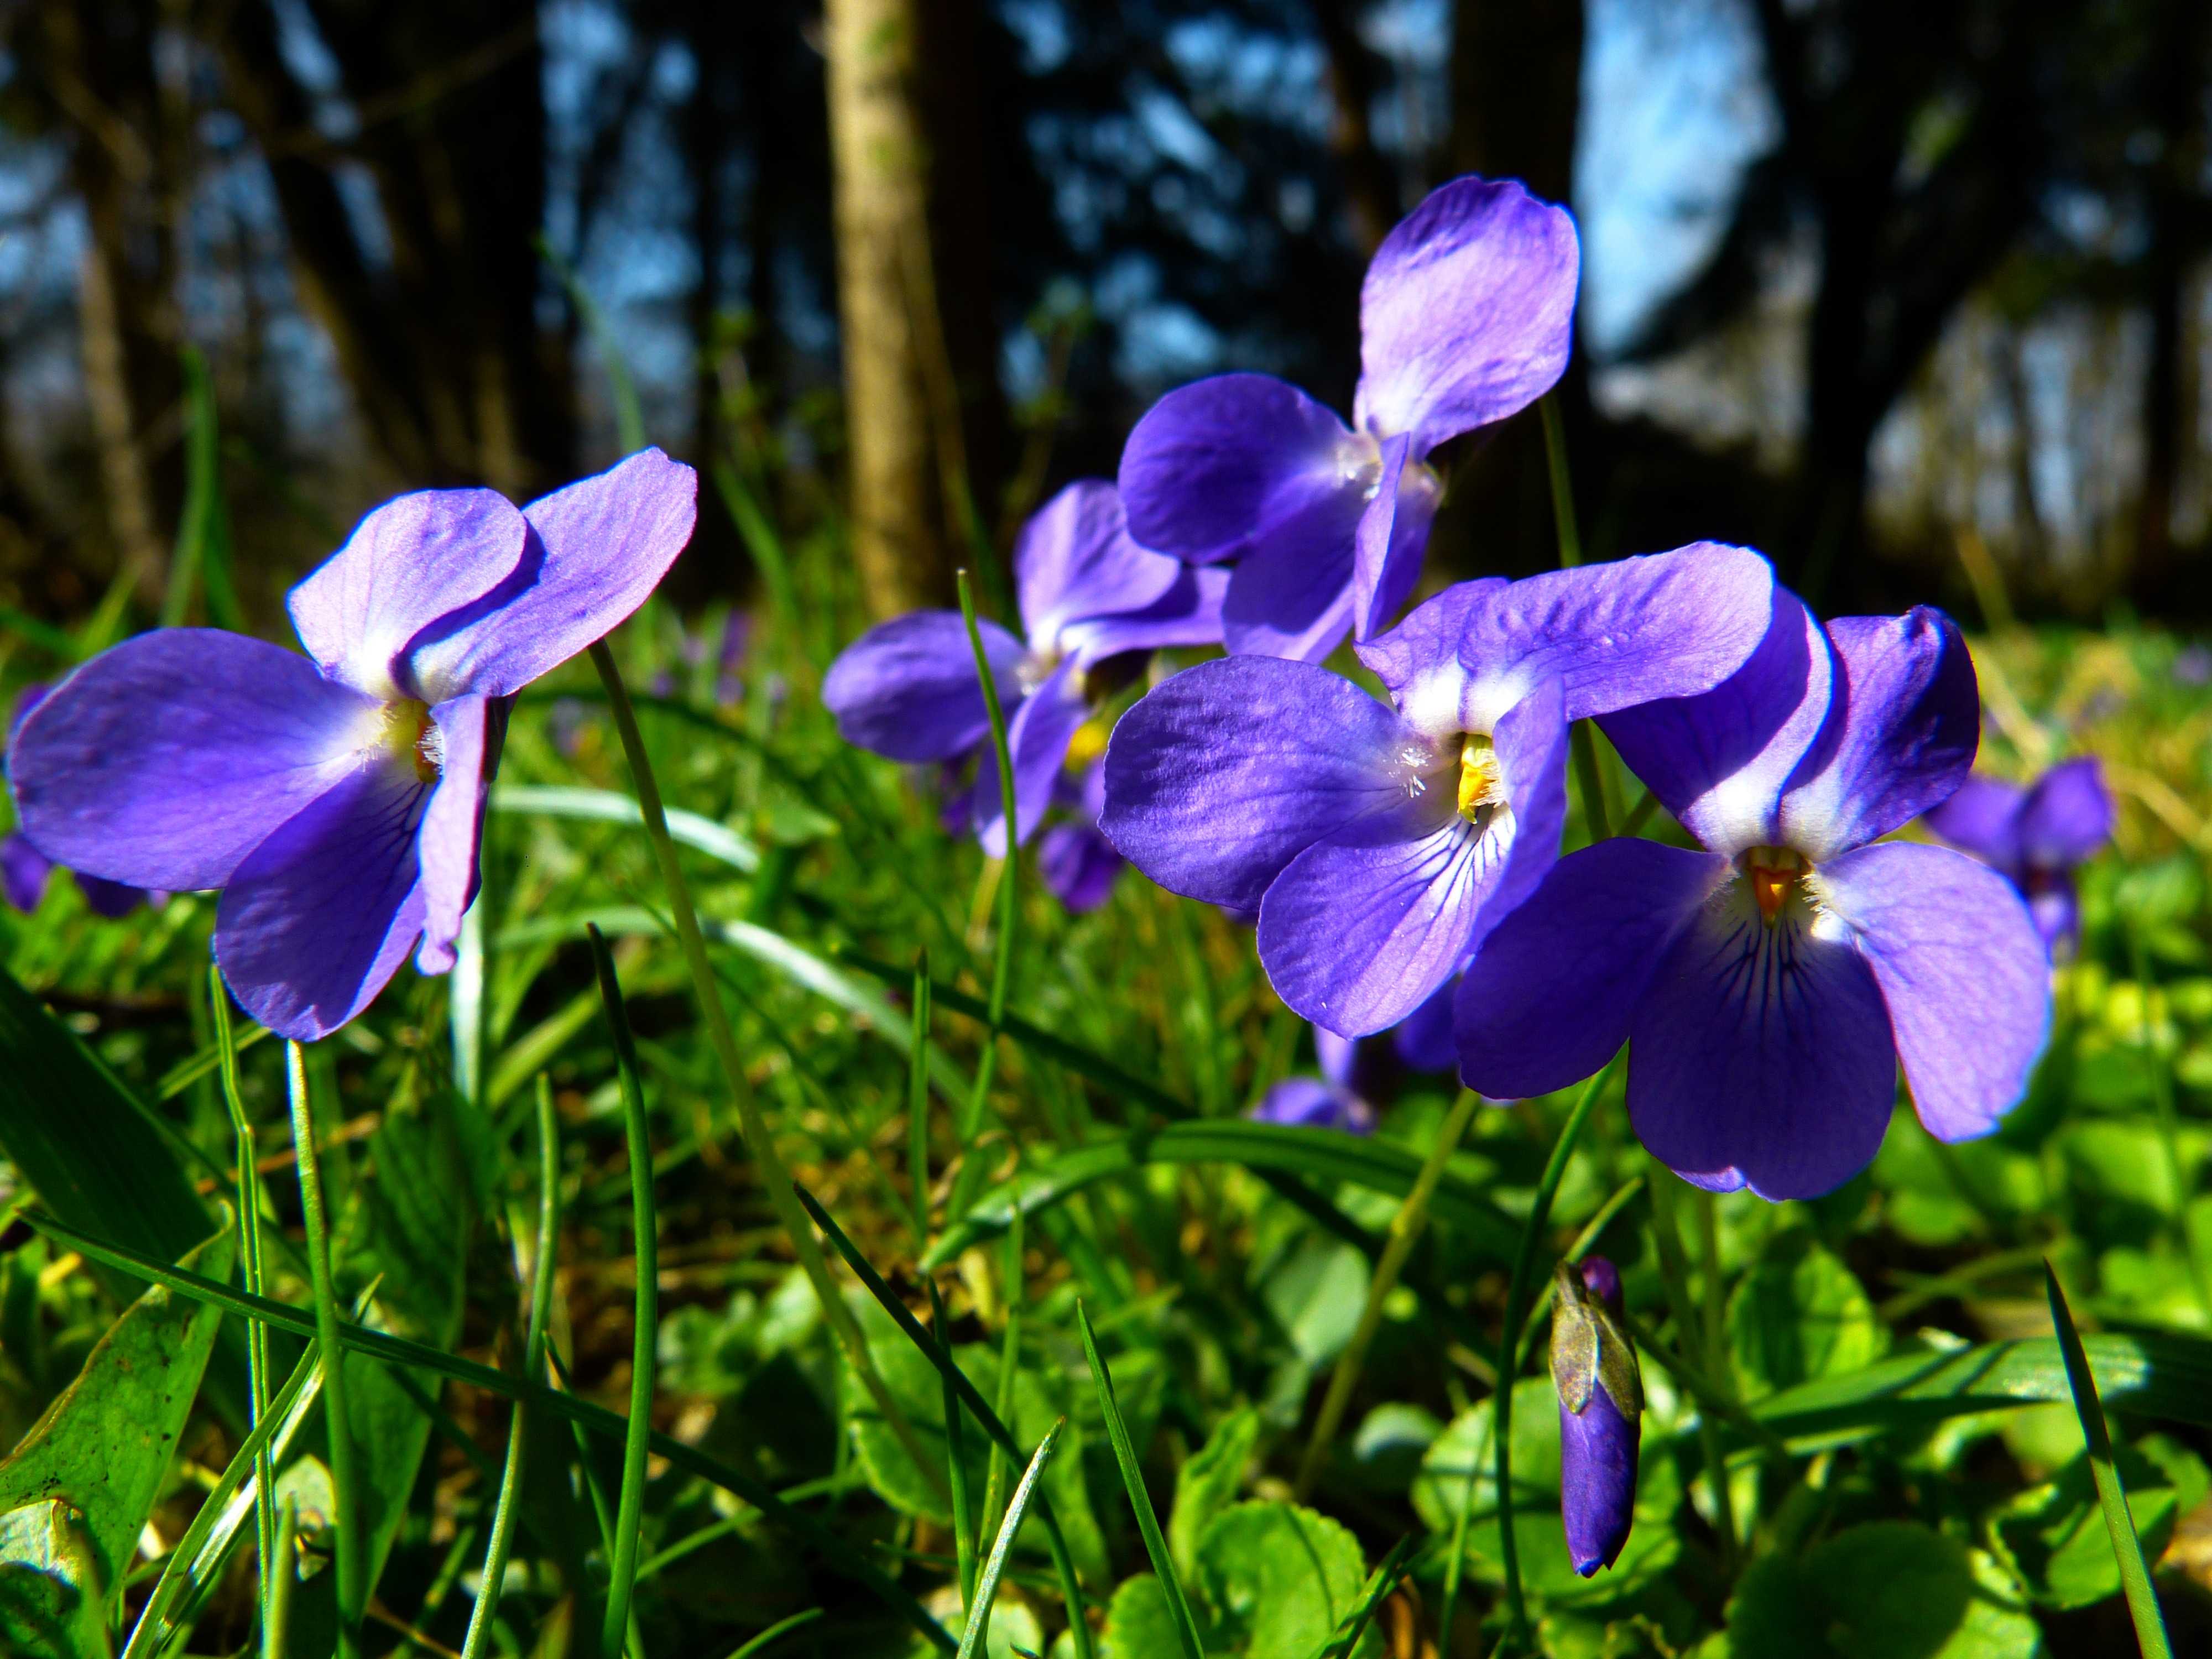 Фиалка ожидание весны (к. морев): условия существования, фото и описание цветка